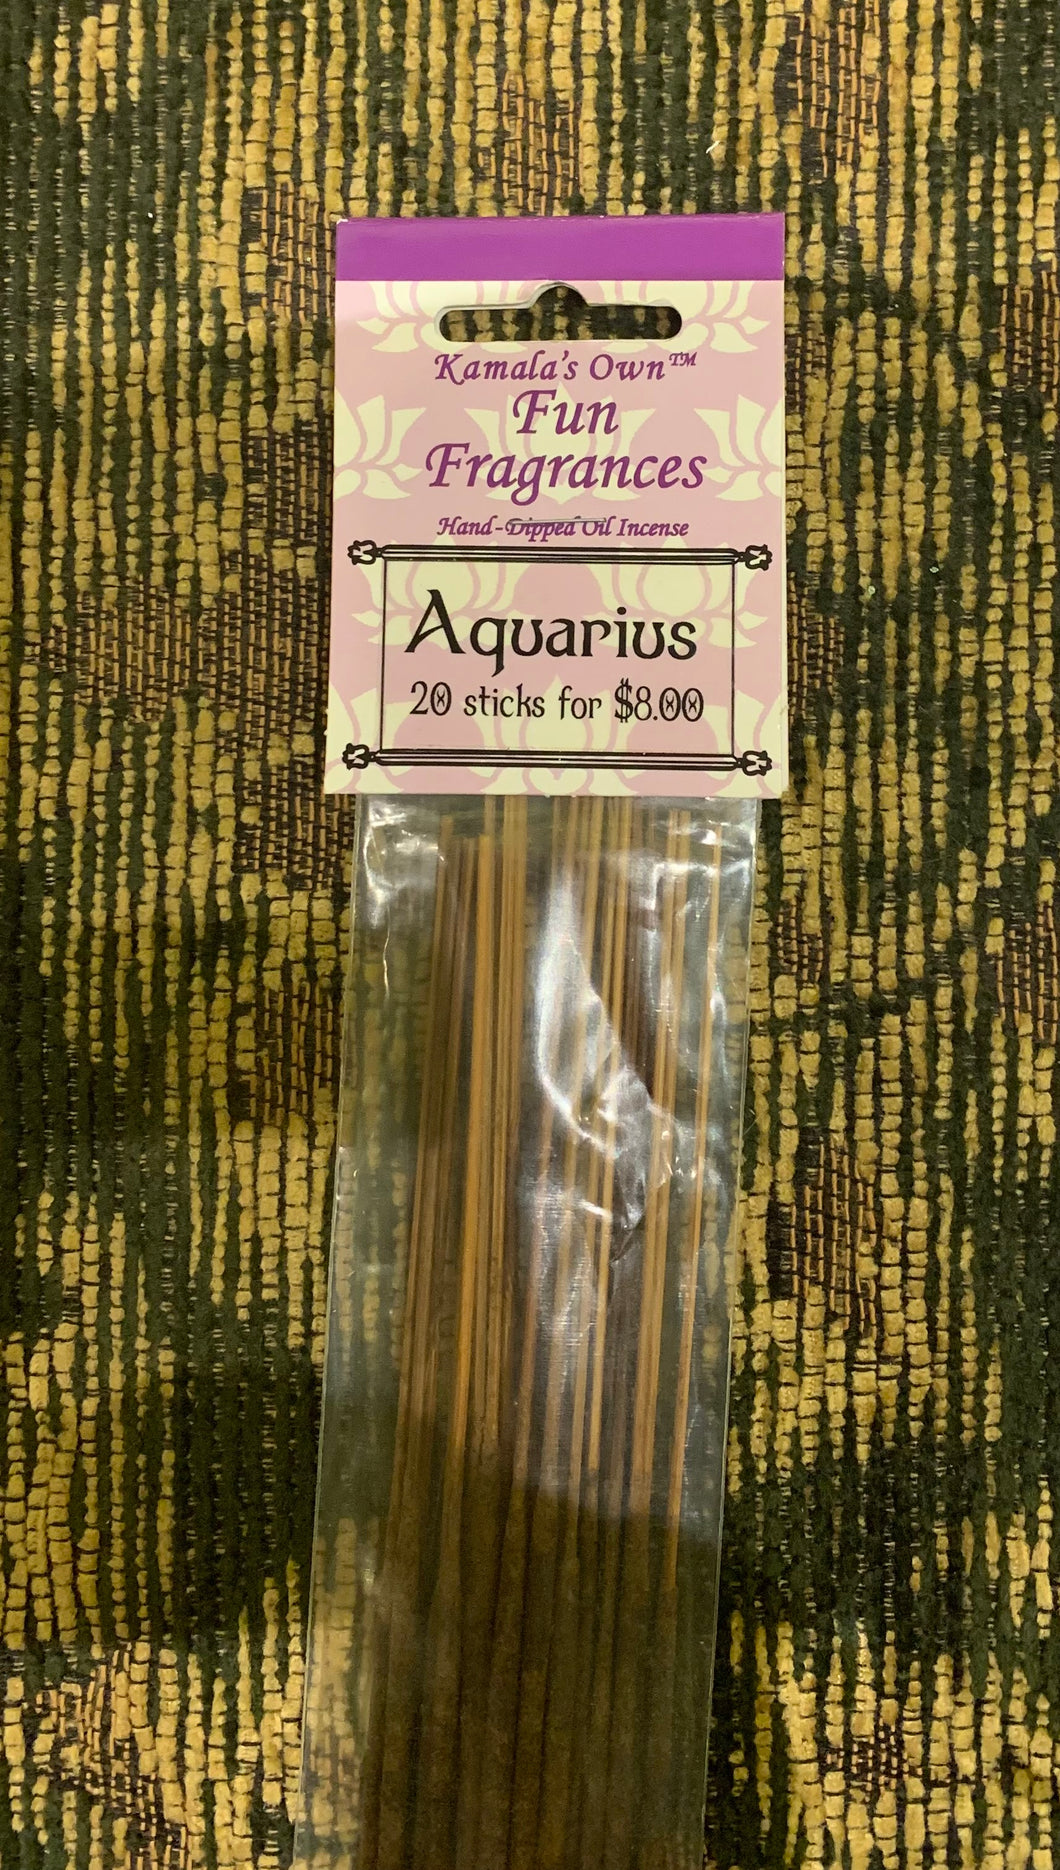 Aquarius stick incense